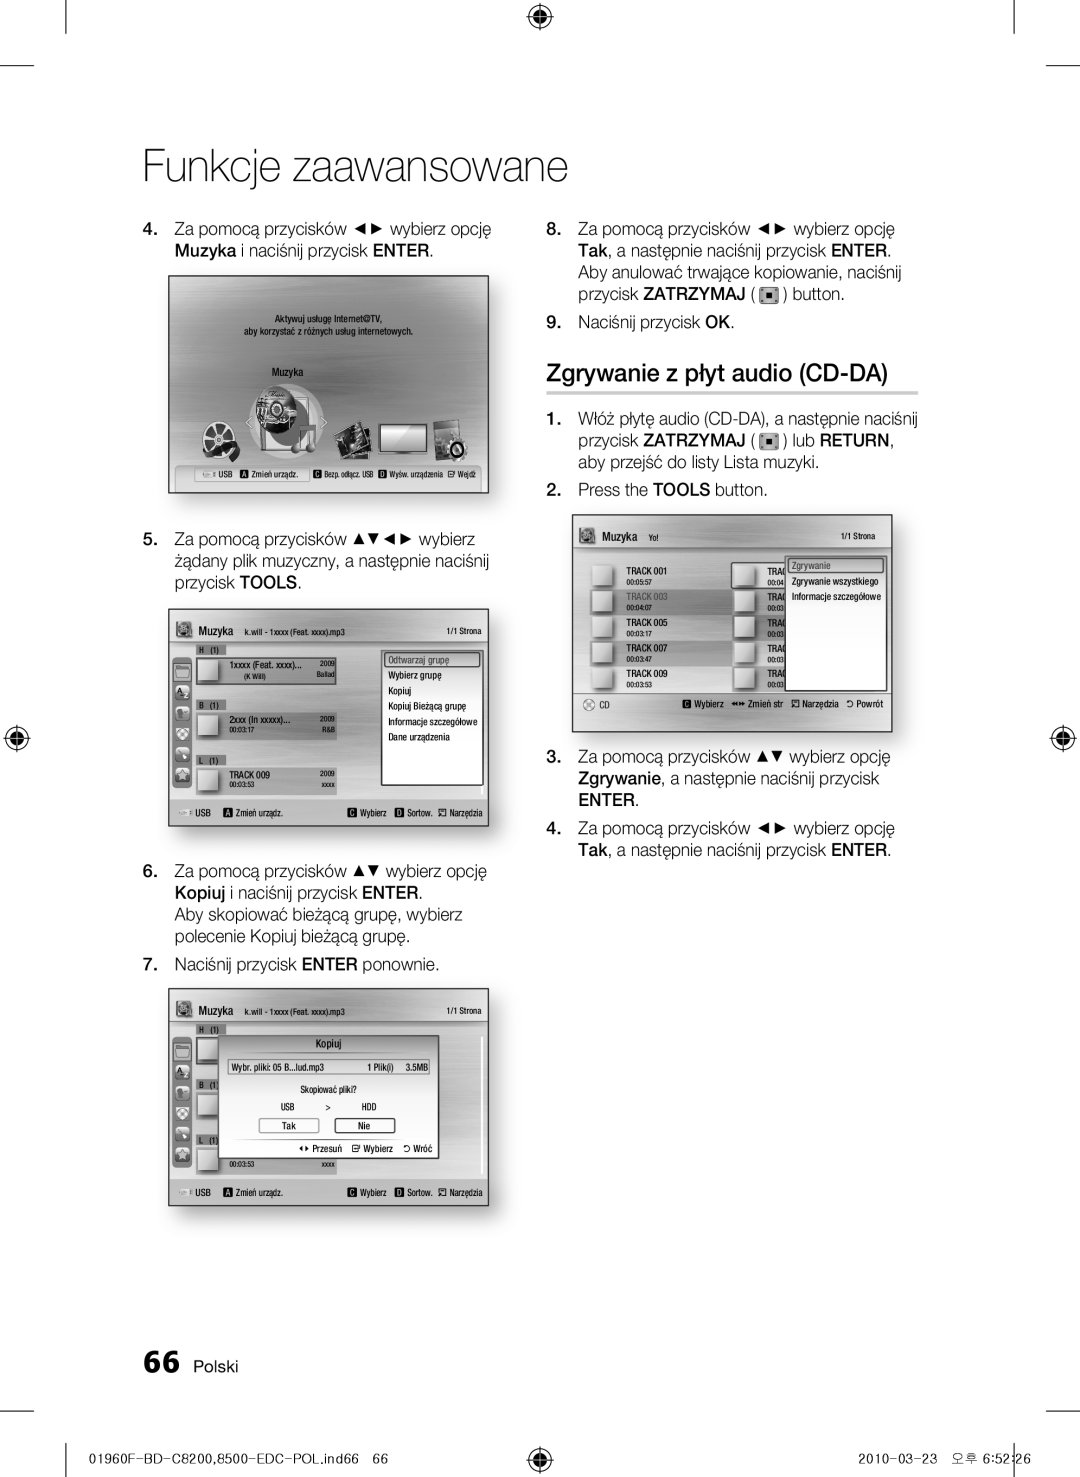 Samsung BD-C8500/XEF manual Zgrywanie z płyt audio CD-DA, Funkcje zaawansowane, Za pomocą przycisków wybierz opcję, Polski 